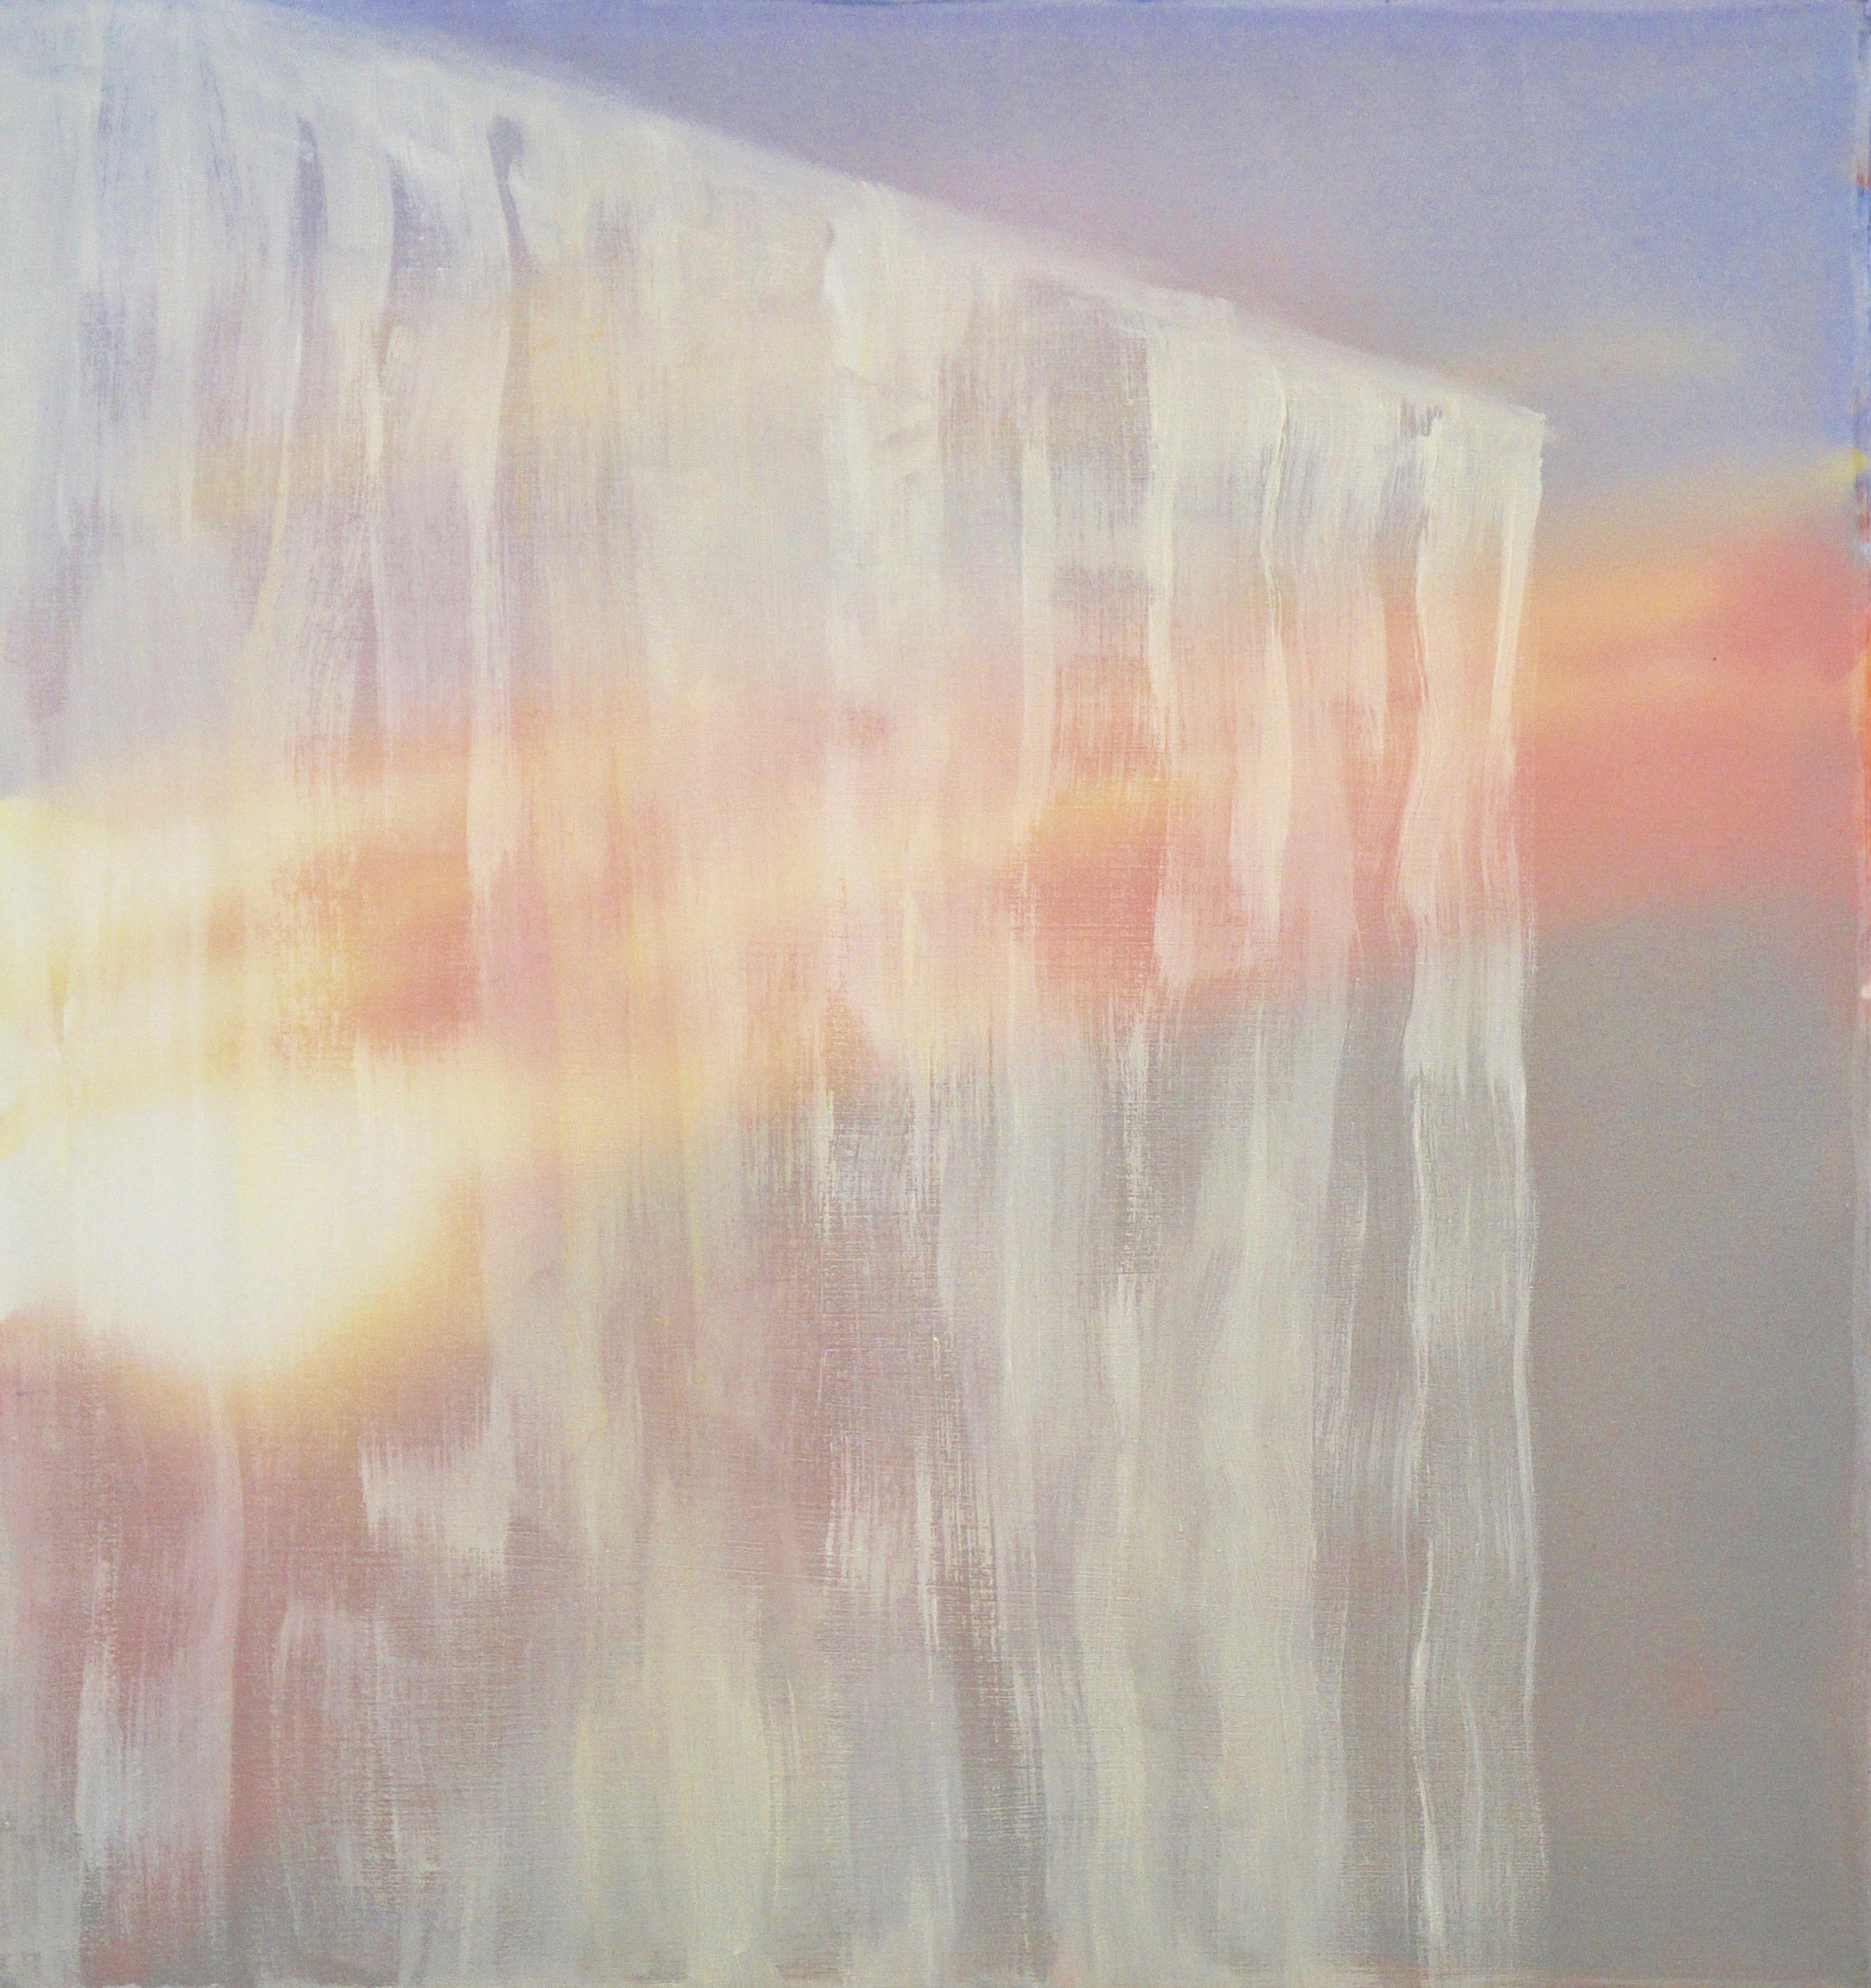 WINDOW IV - Zeitgenössische abstrakte Mixed Media-Malerei, Licht und Schatten, Eiszapfen